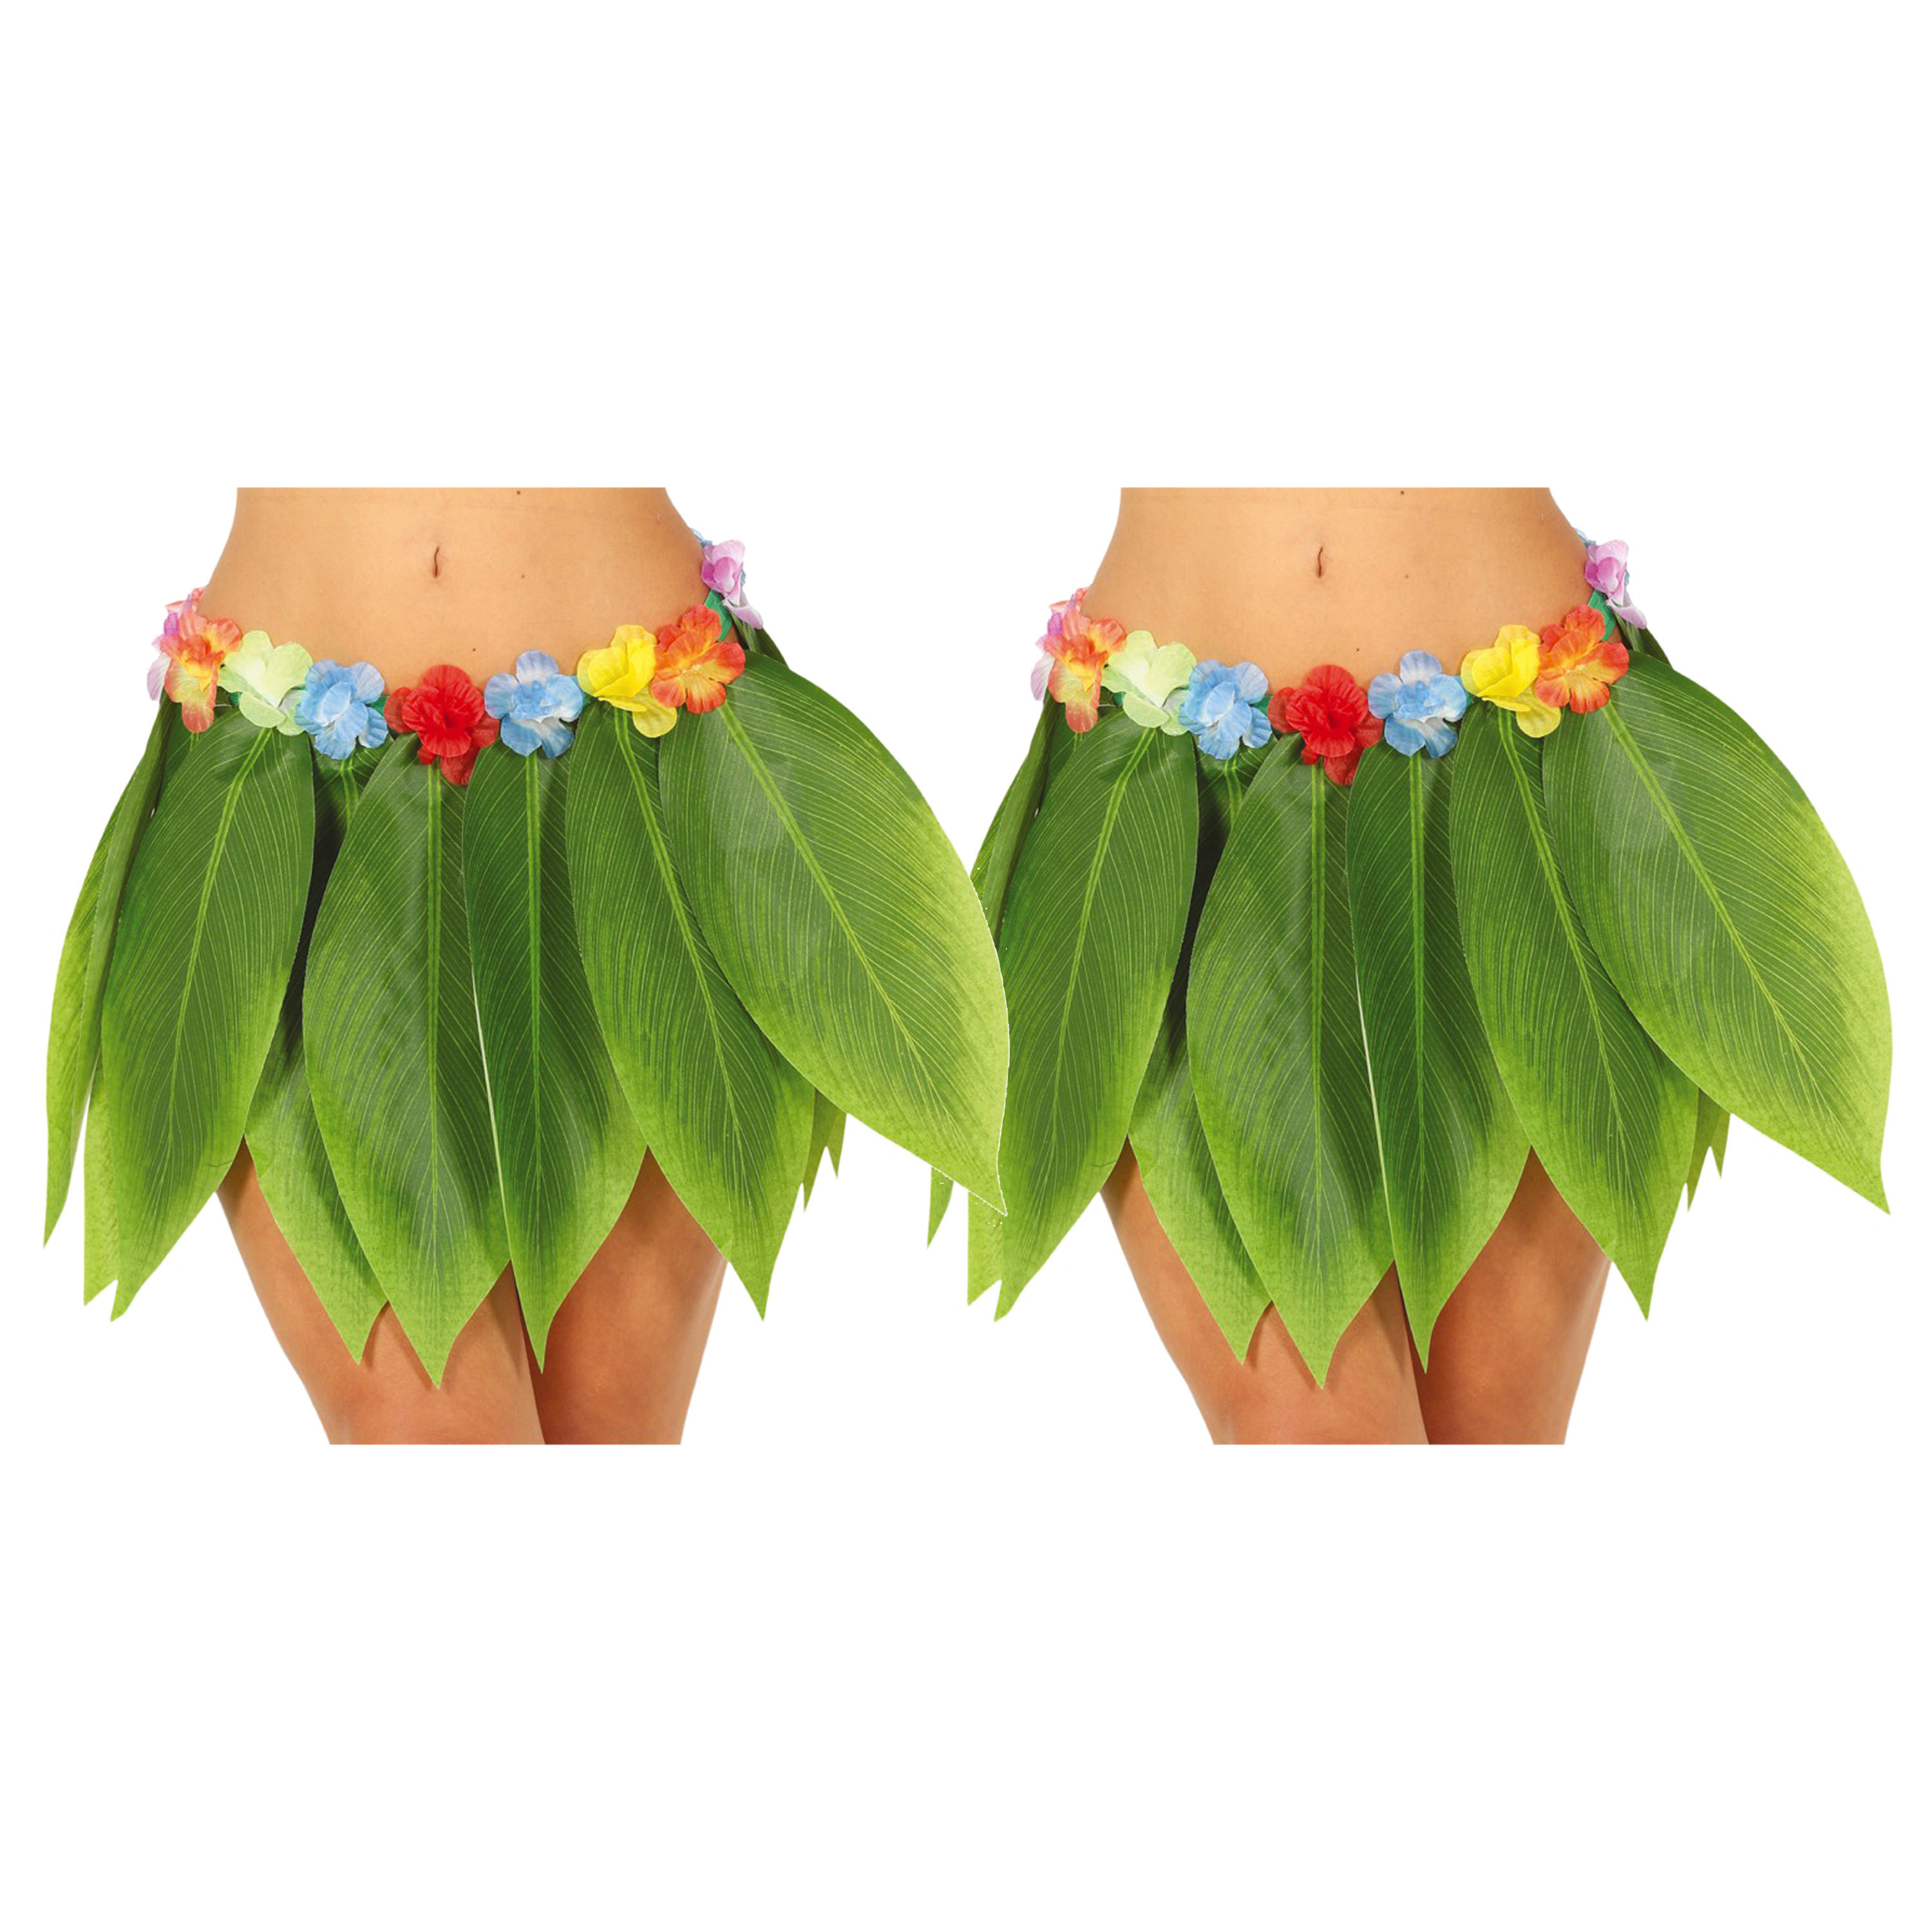 Hawaii verkleed rokje met bladeren - 2x - voor volwassenen - groen - 38 cm - hoela rokje - tropisch